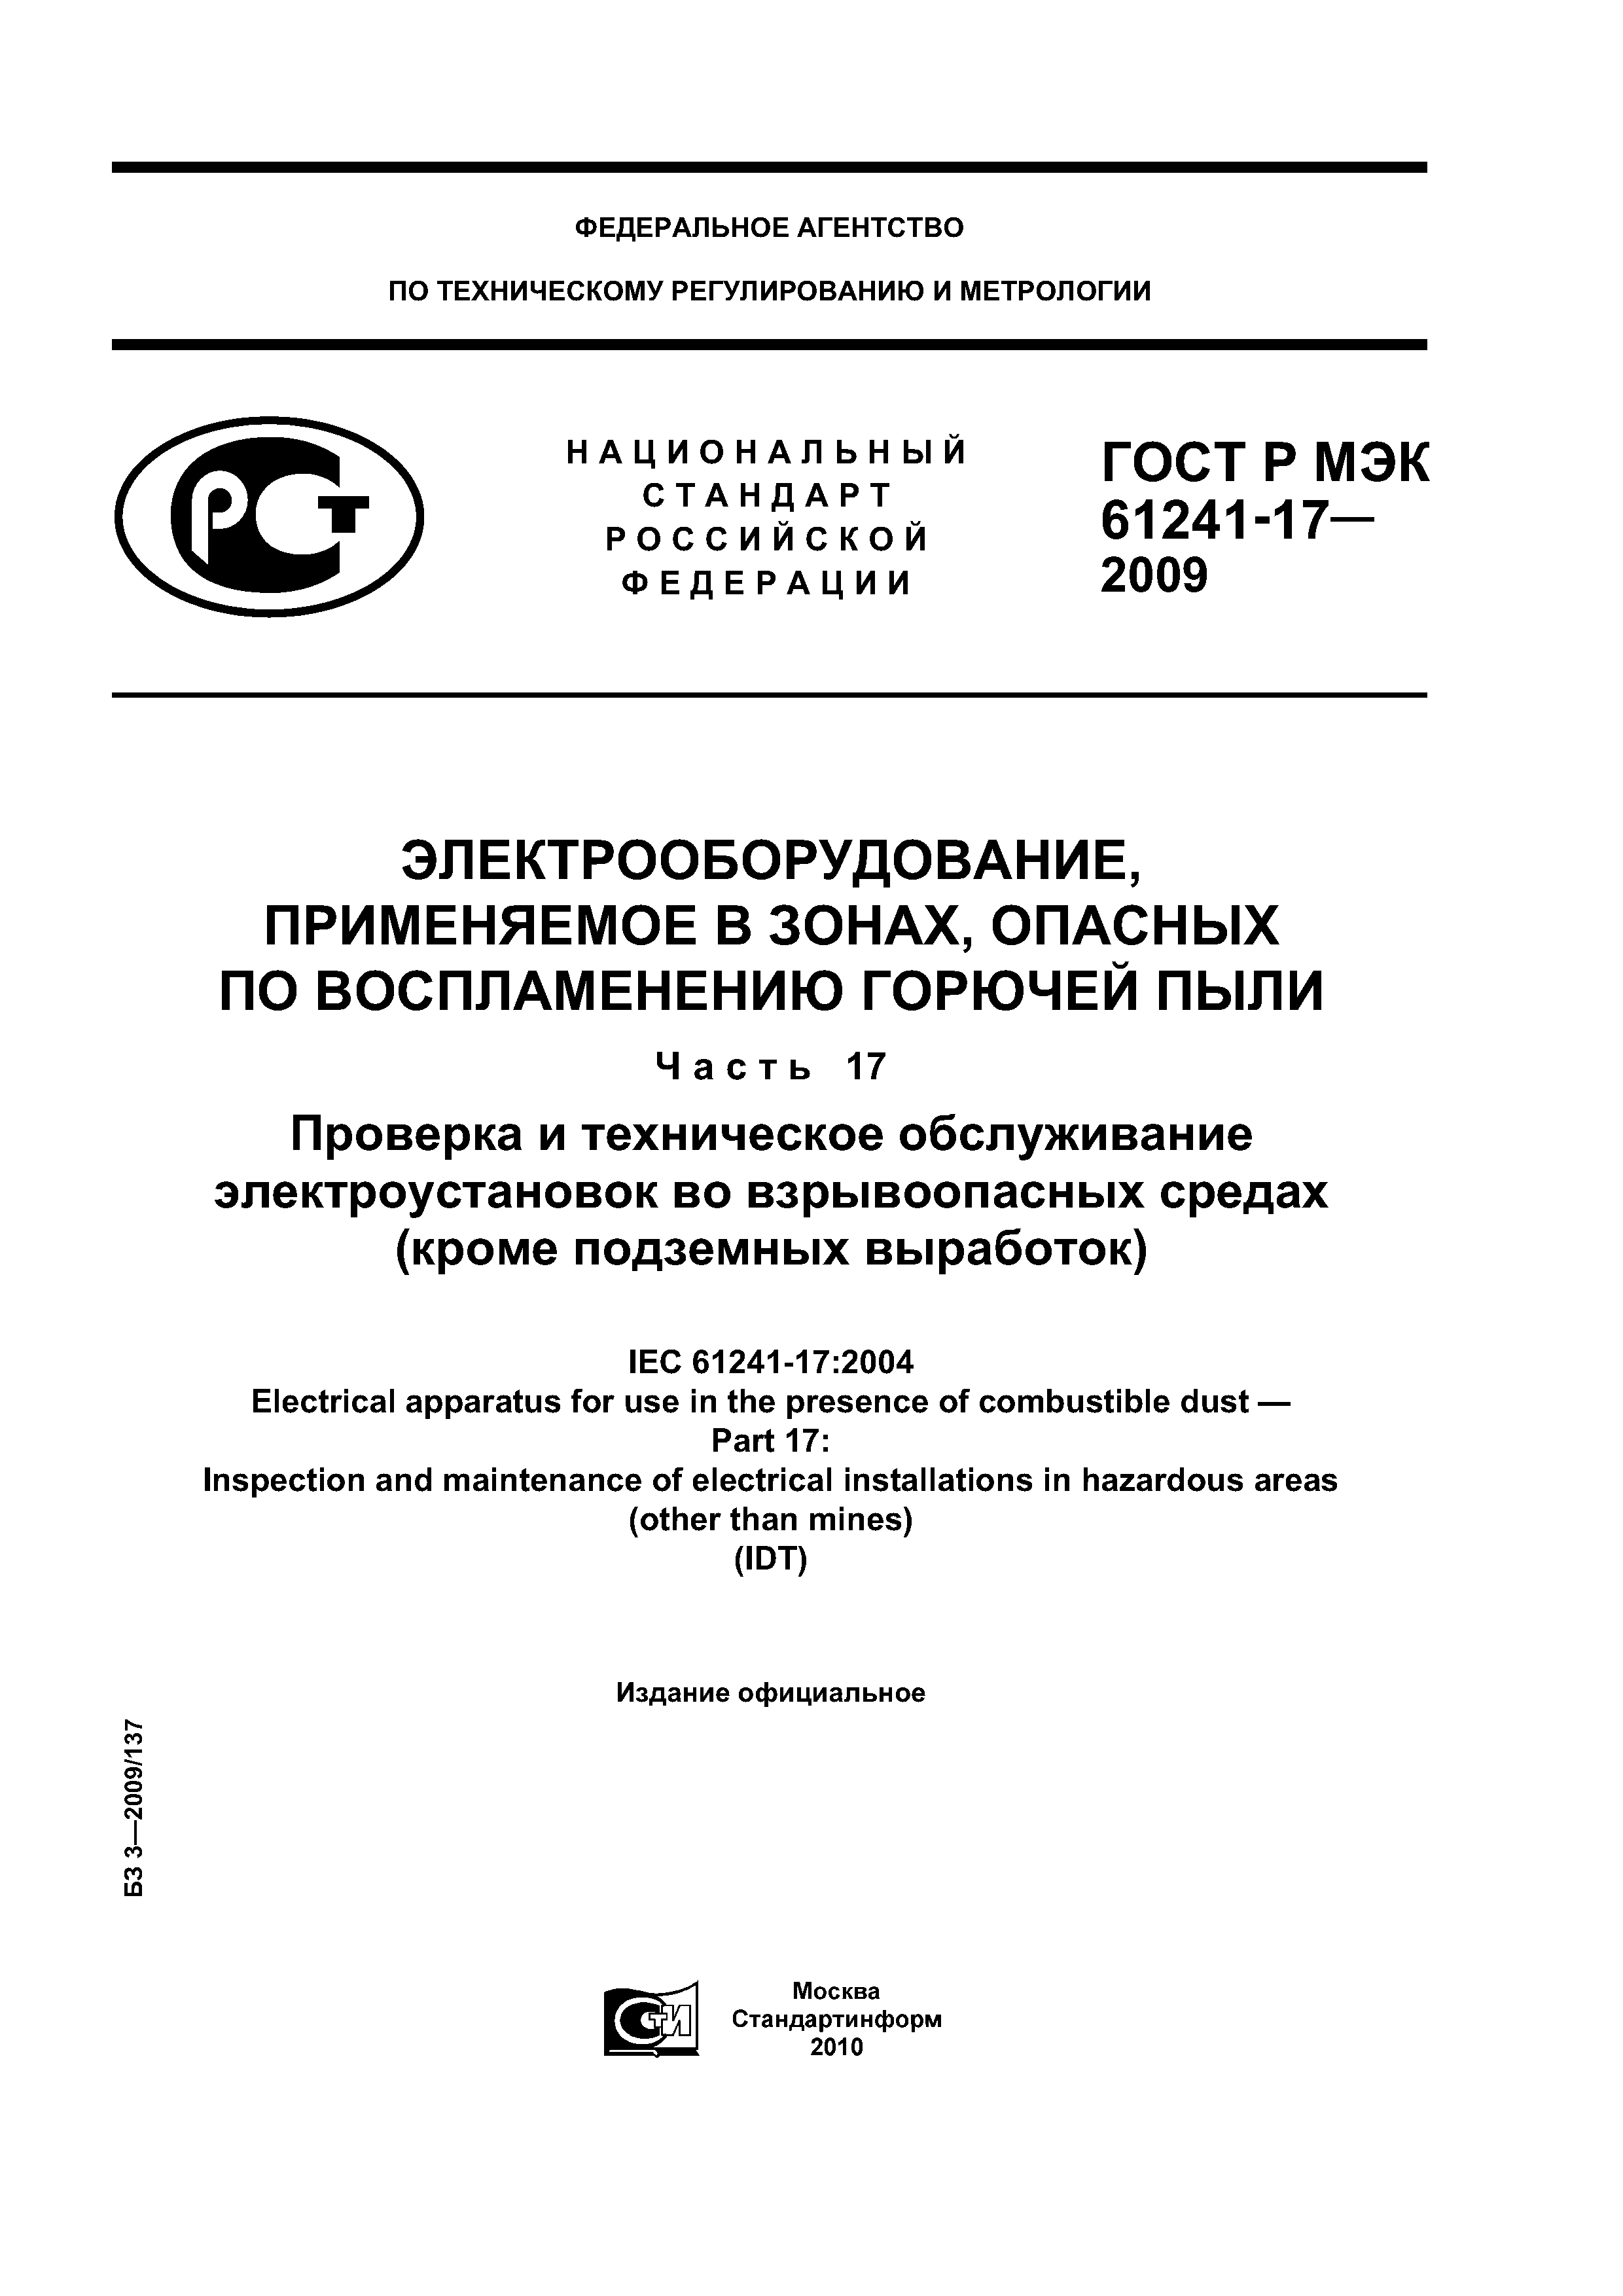 ГОСТ Р МЭК 61241-17-2009